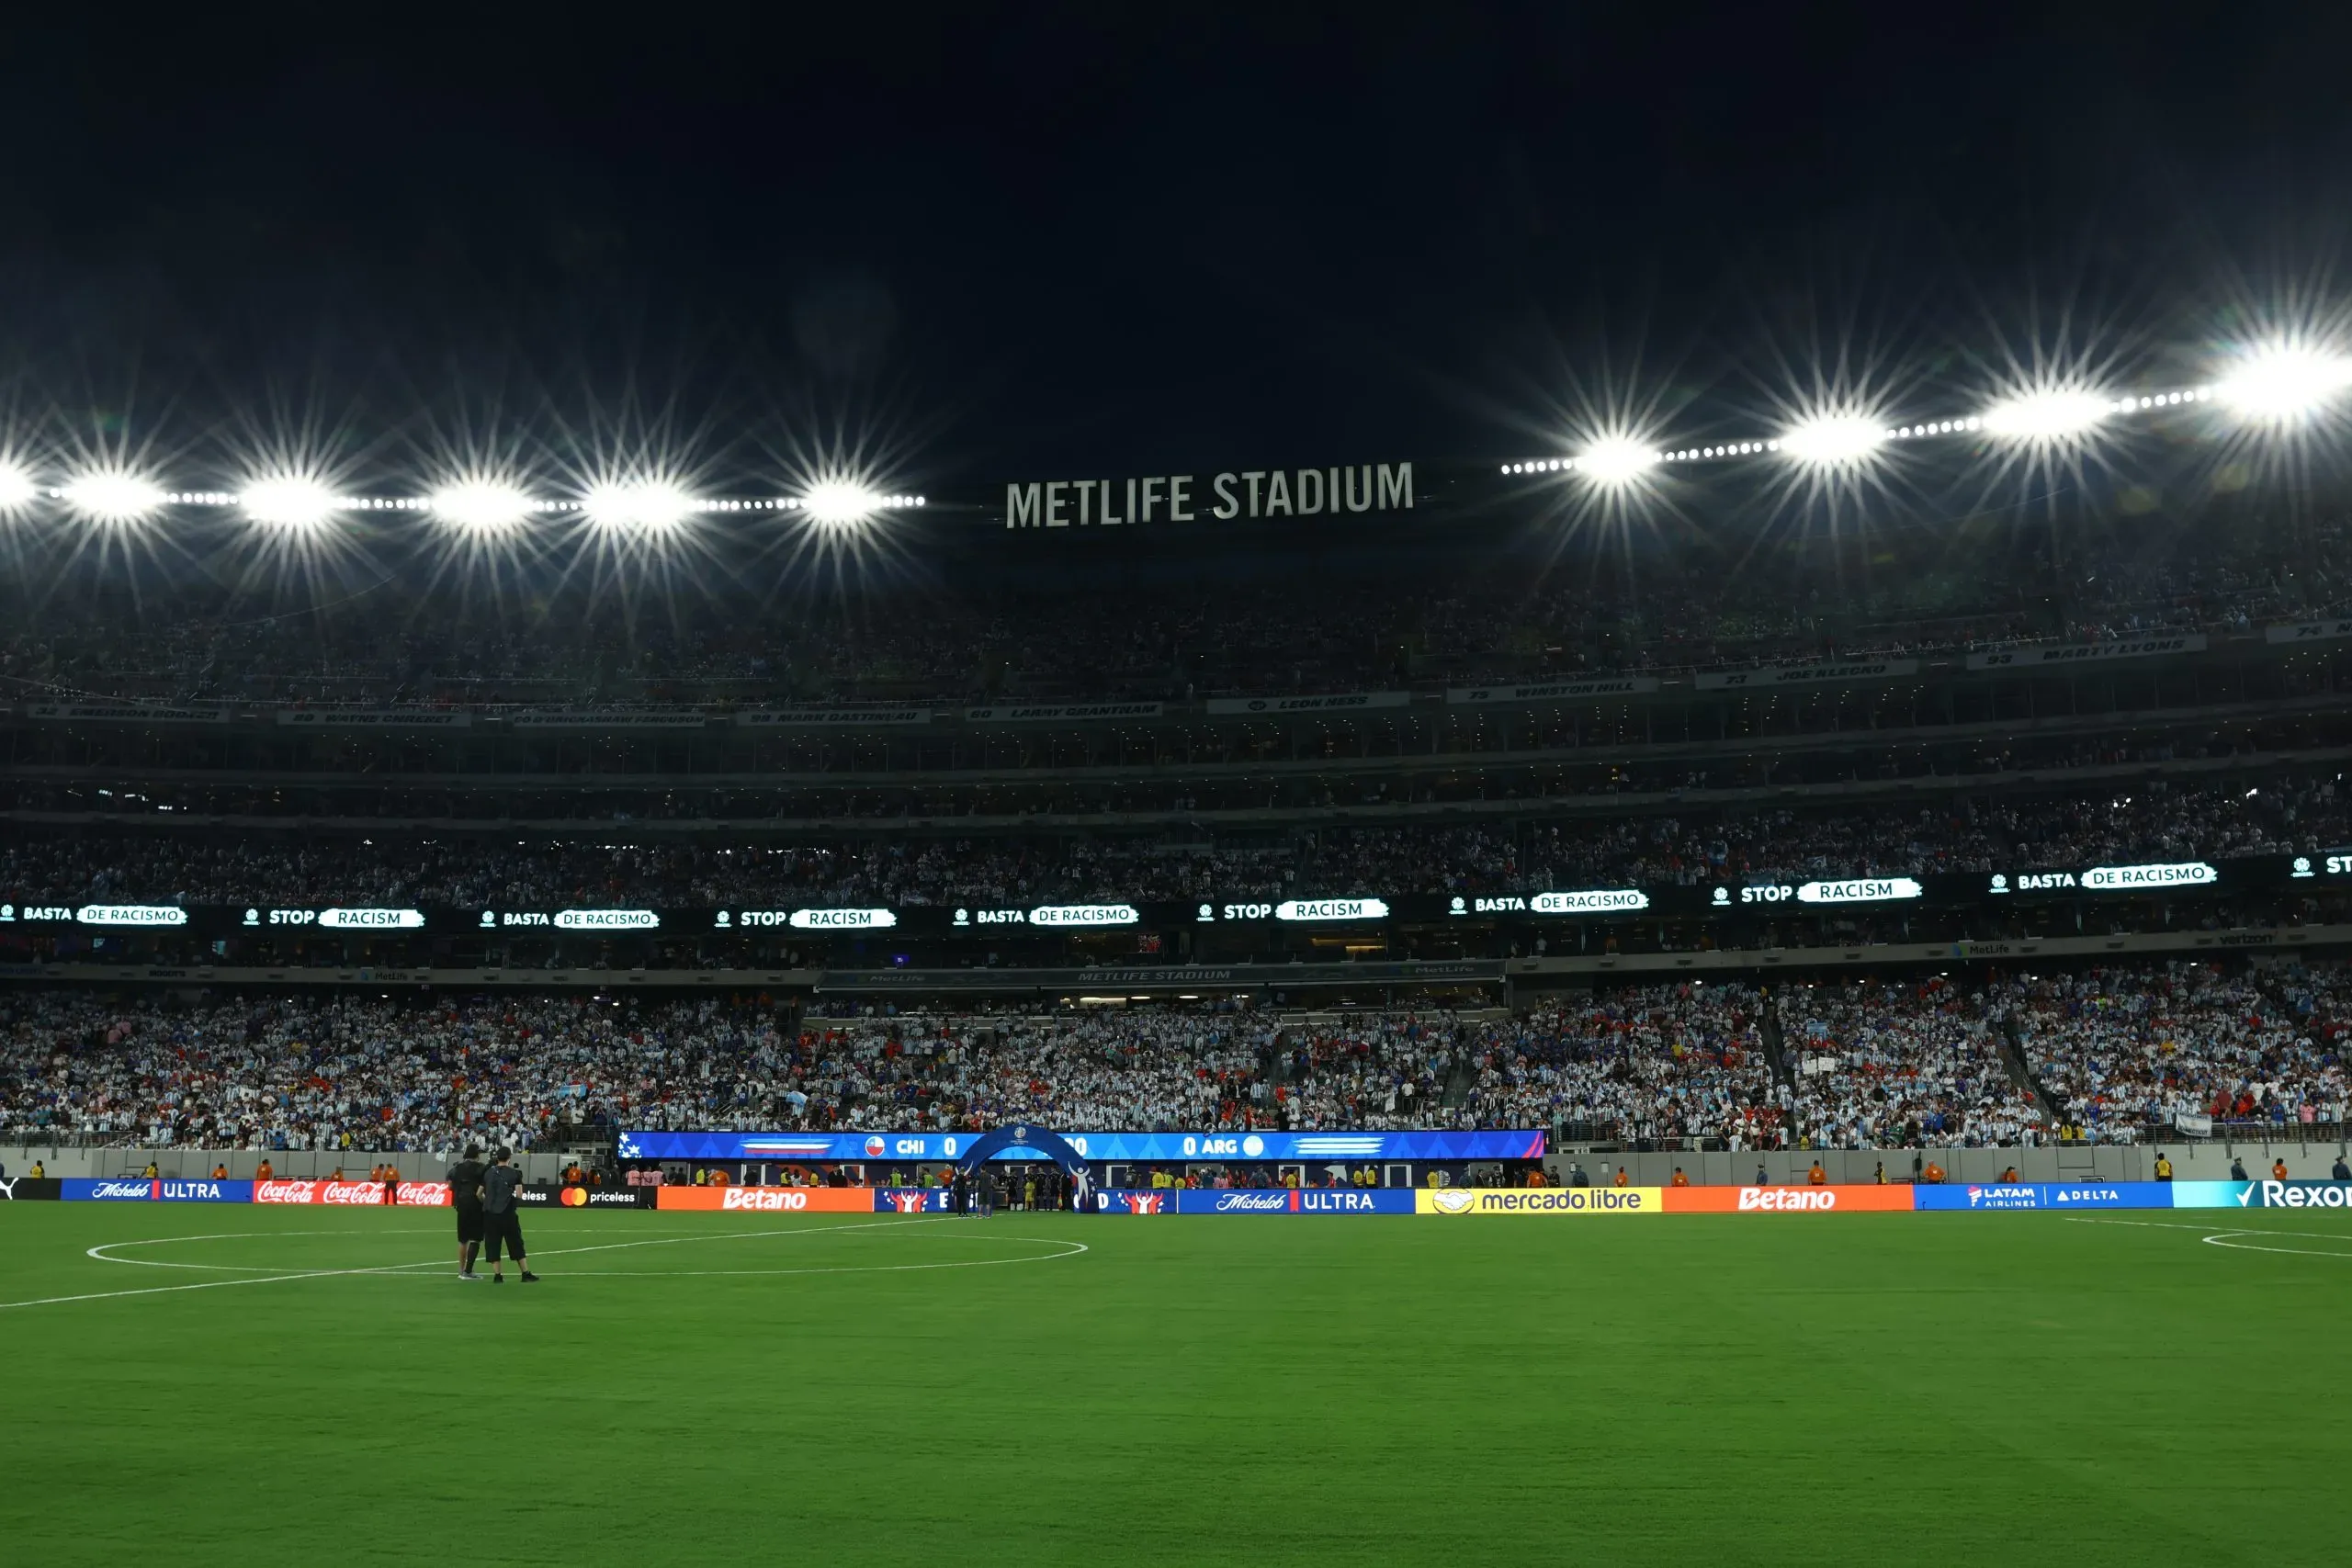 MetLife Stadium, palco da partida de logo mais. Foto: Tim Nwachukwu/Getty Images.